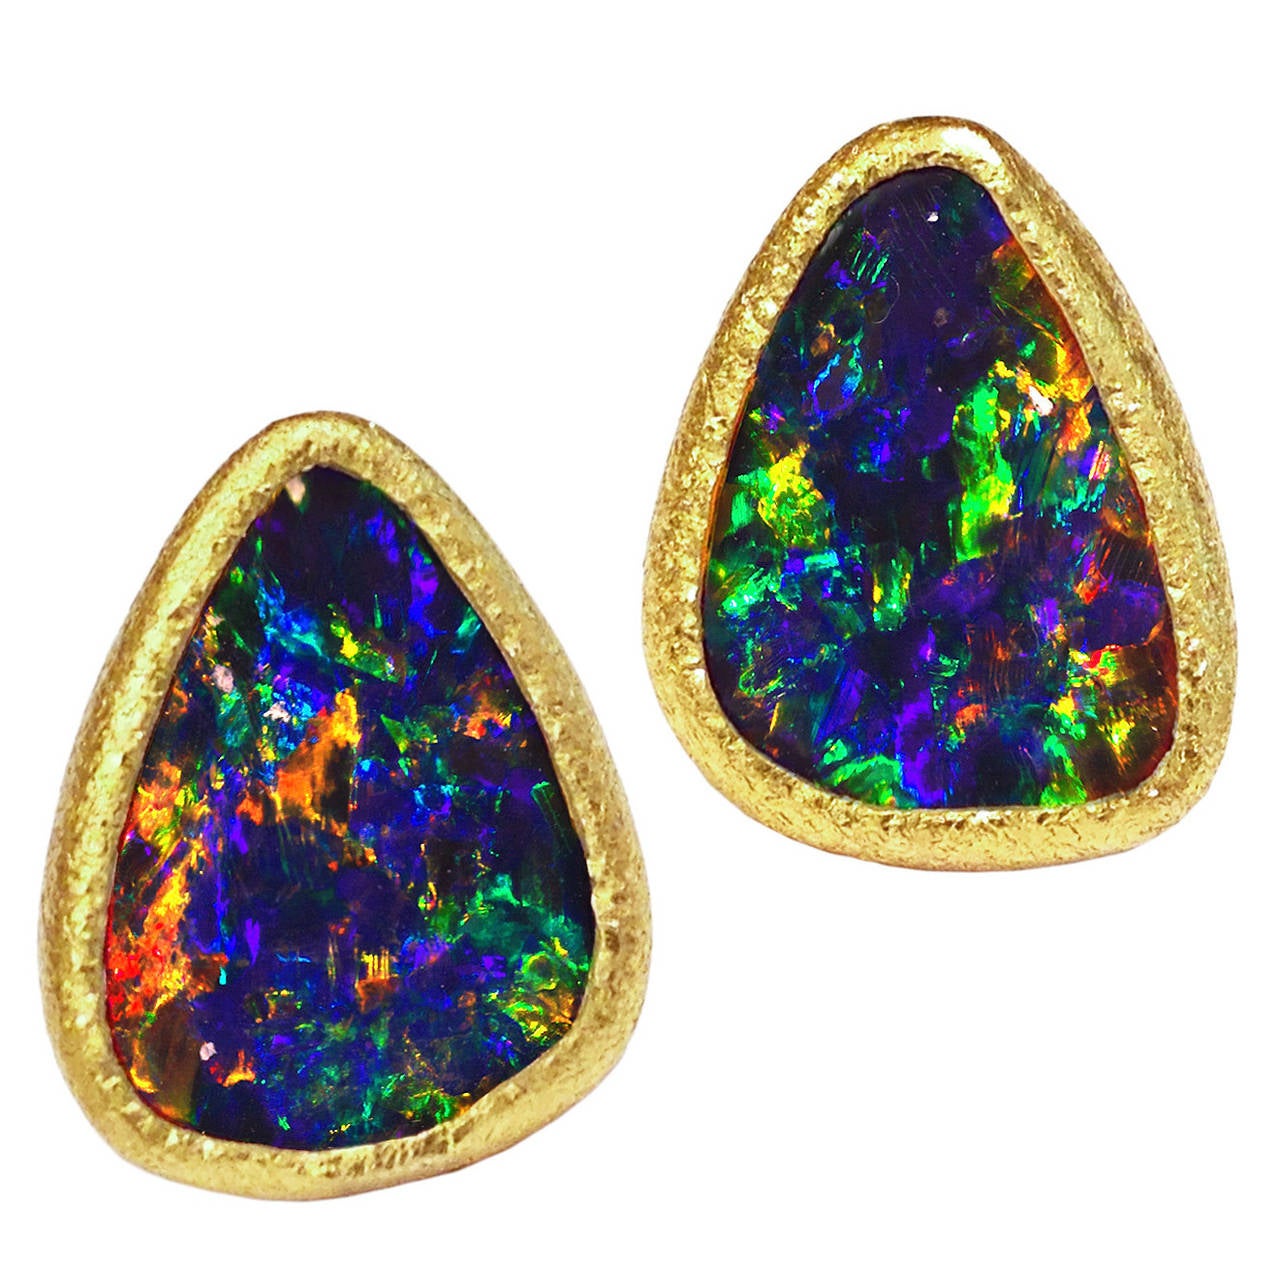 Devta Doolan One of a Kind Opal Doublet Confetti Fire Gold Stud Earrings